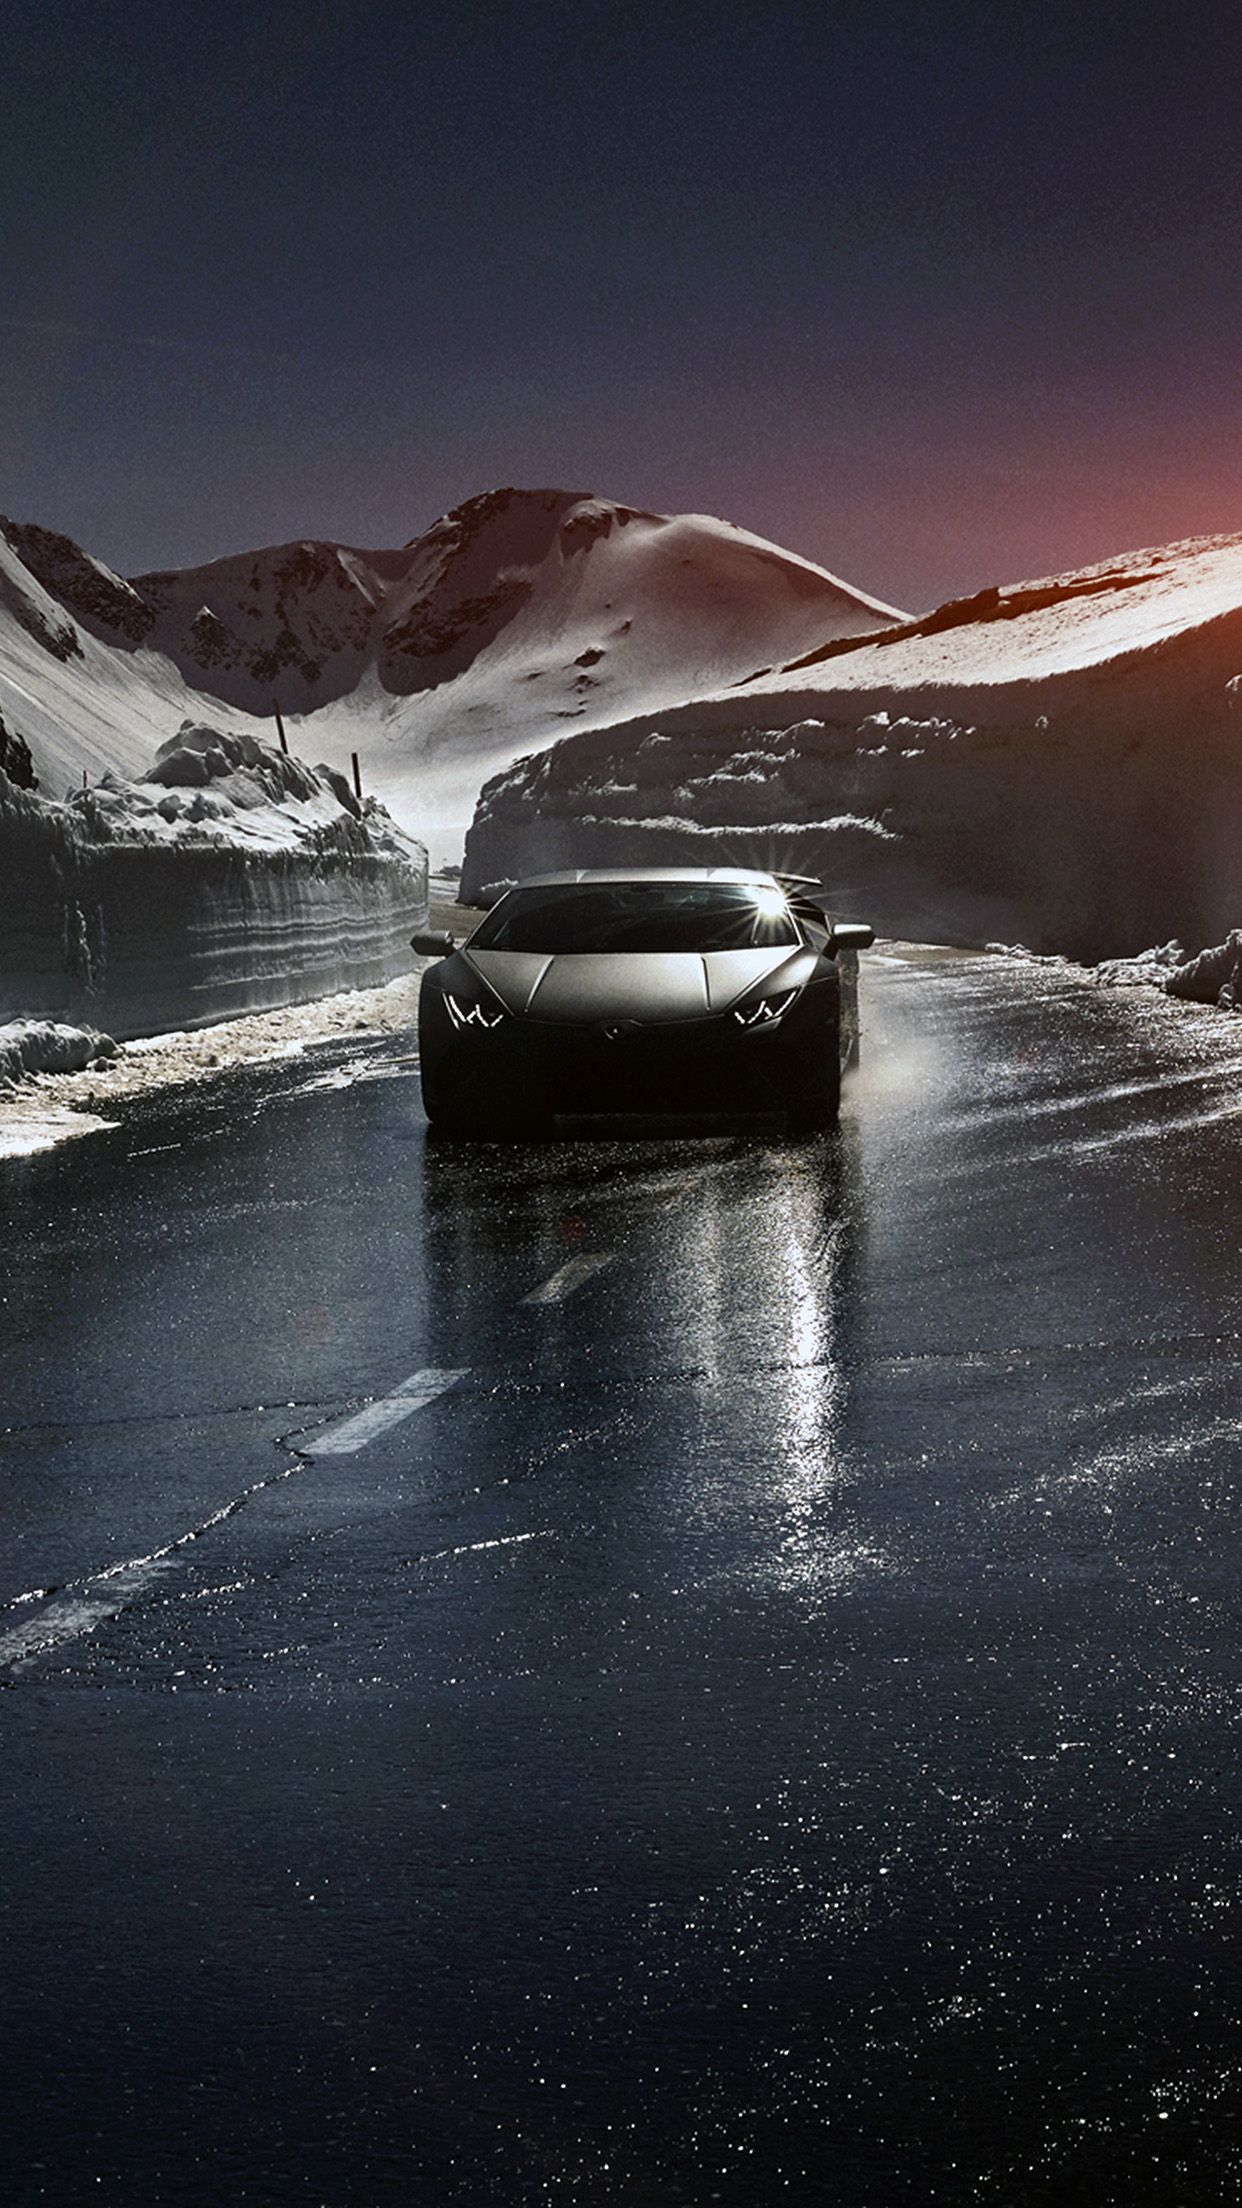 iPhone7 wallpaper. car lamborghini car dark road drive art winter